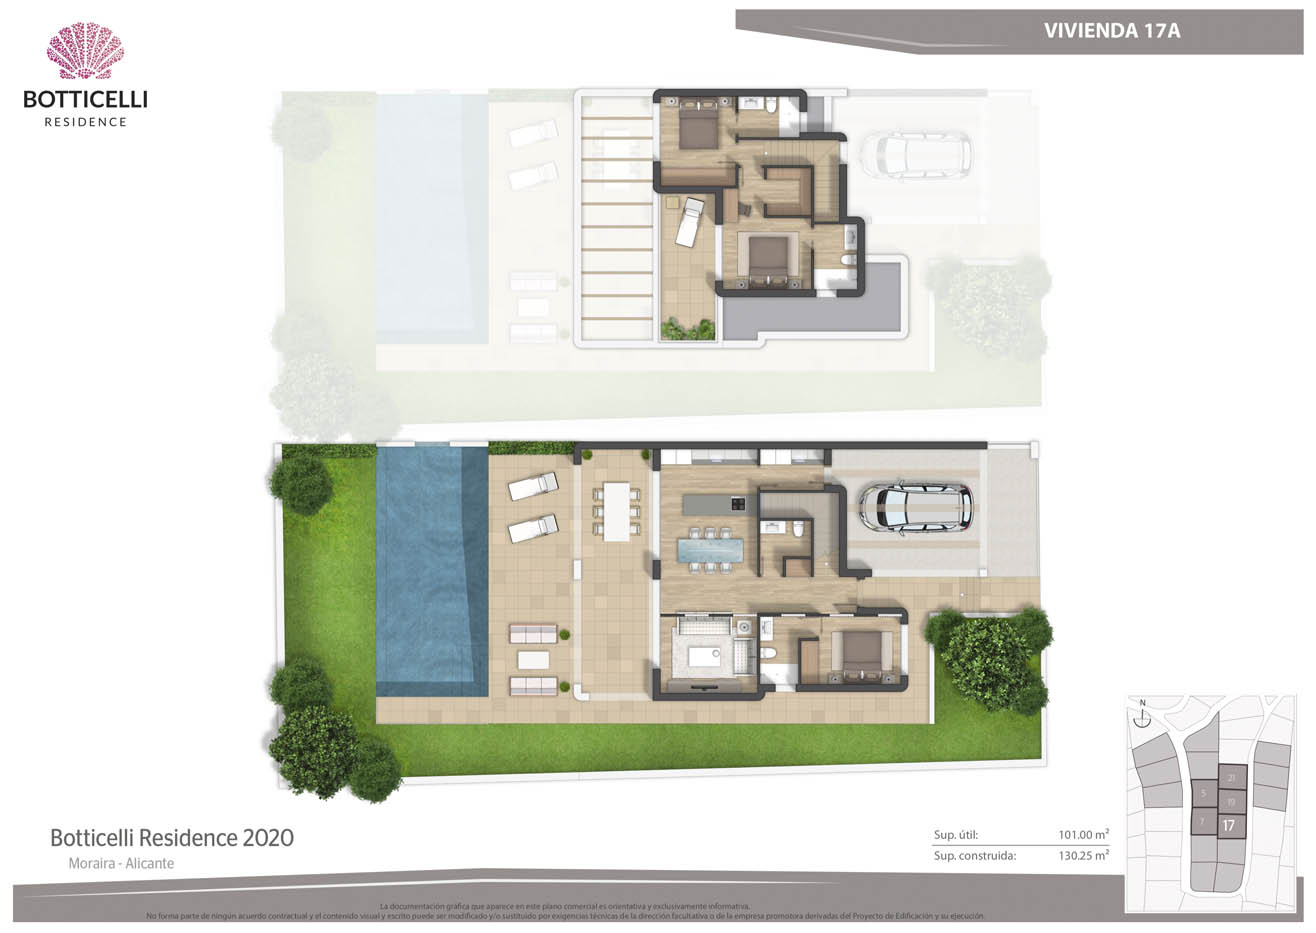 Planos comerciales 2D a color de una urbanización residencial de viviendas adosadas